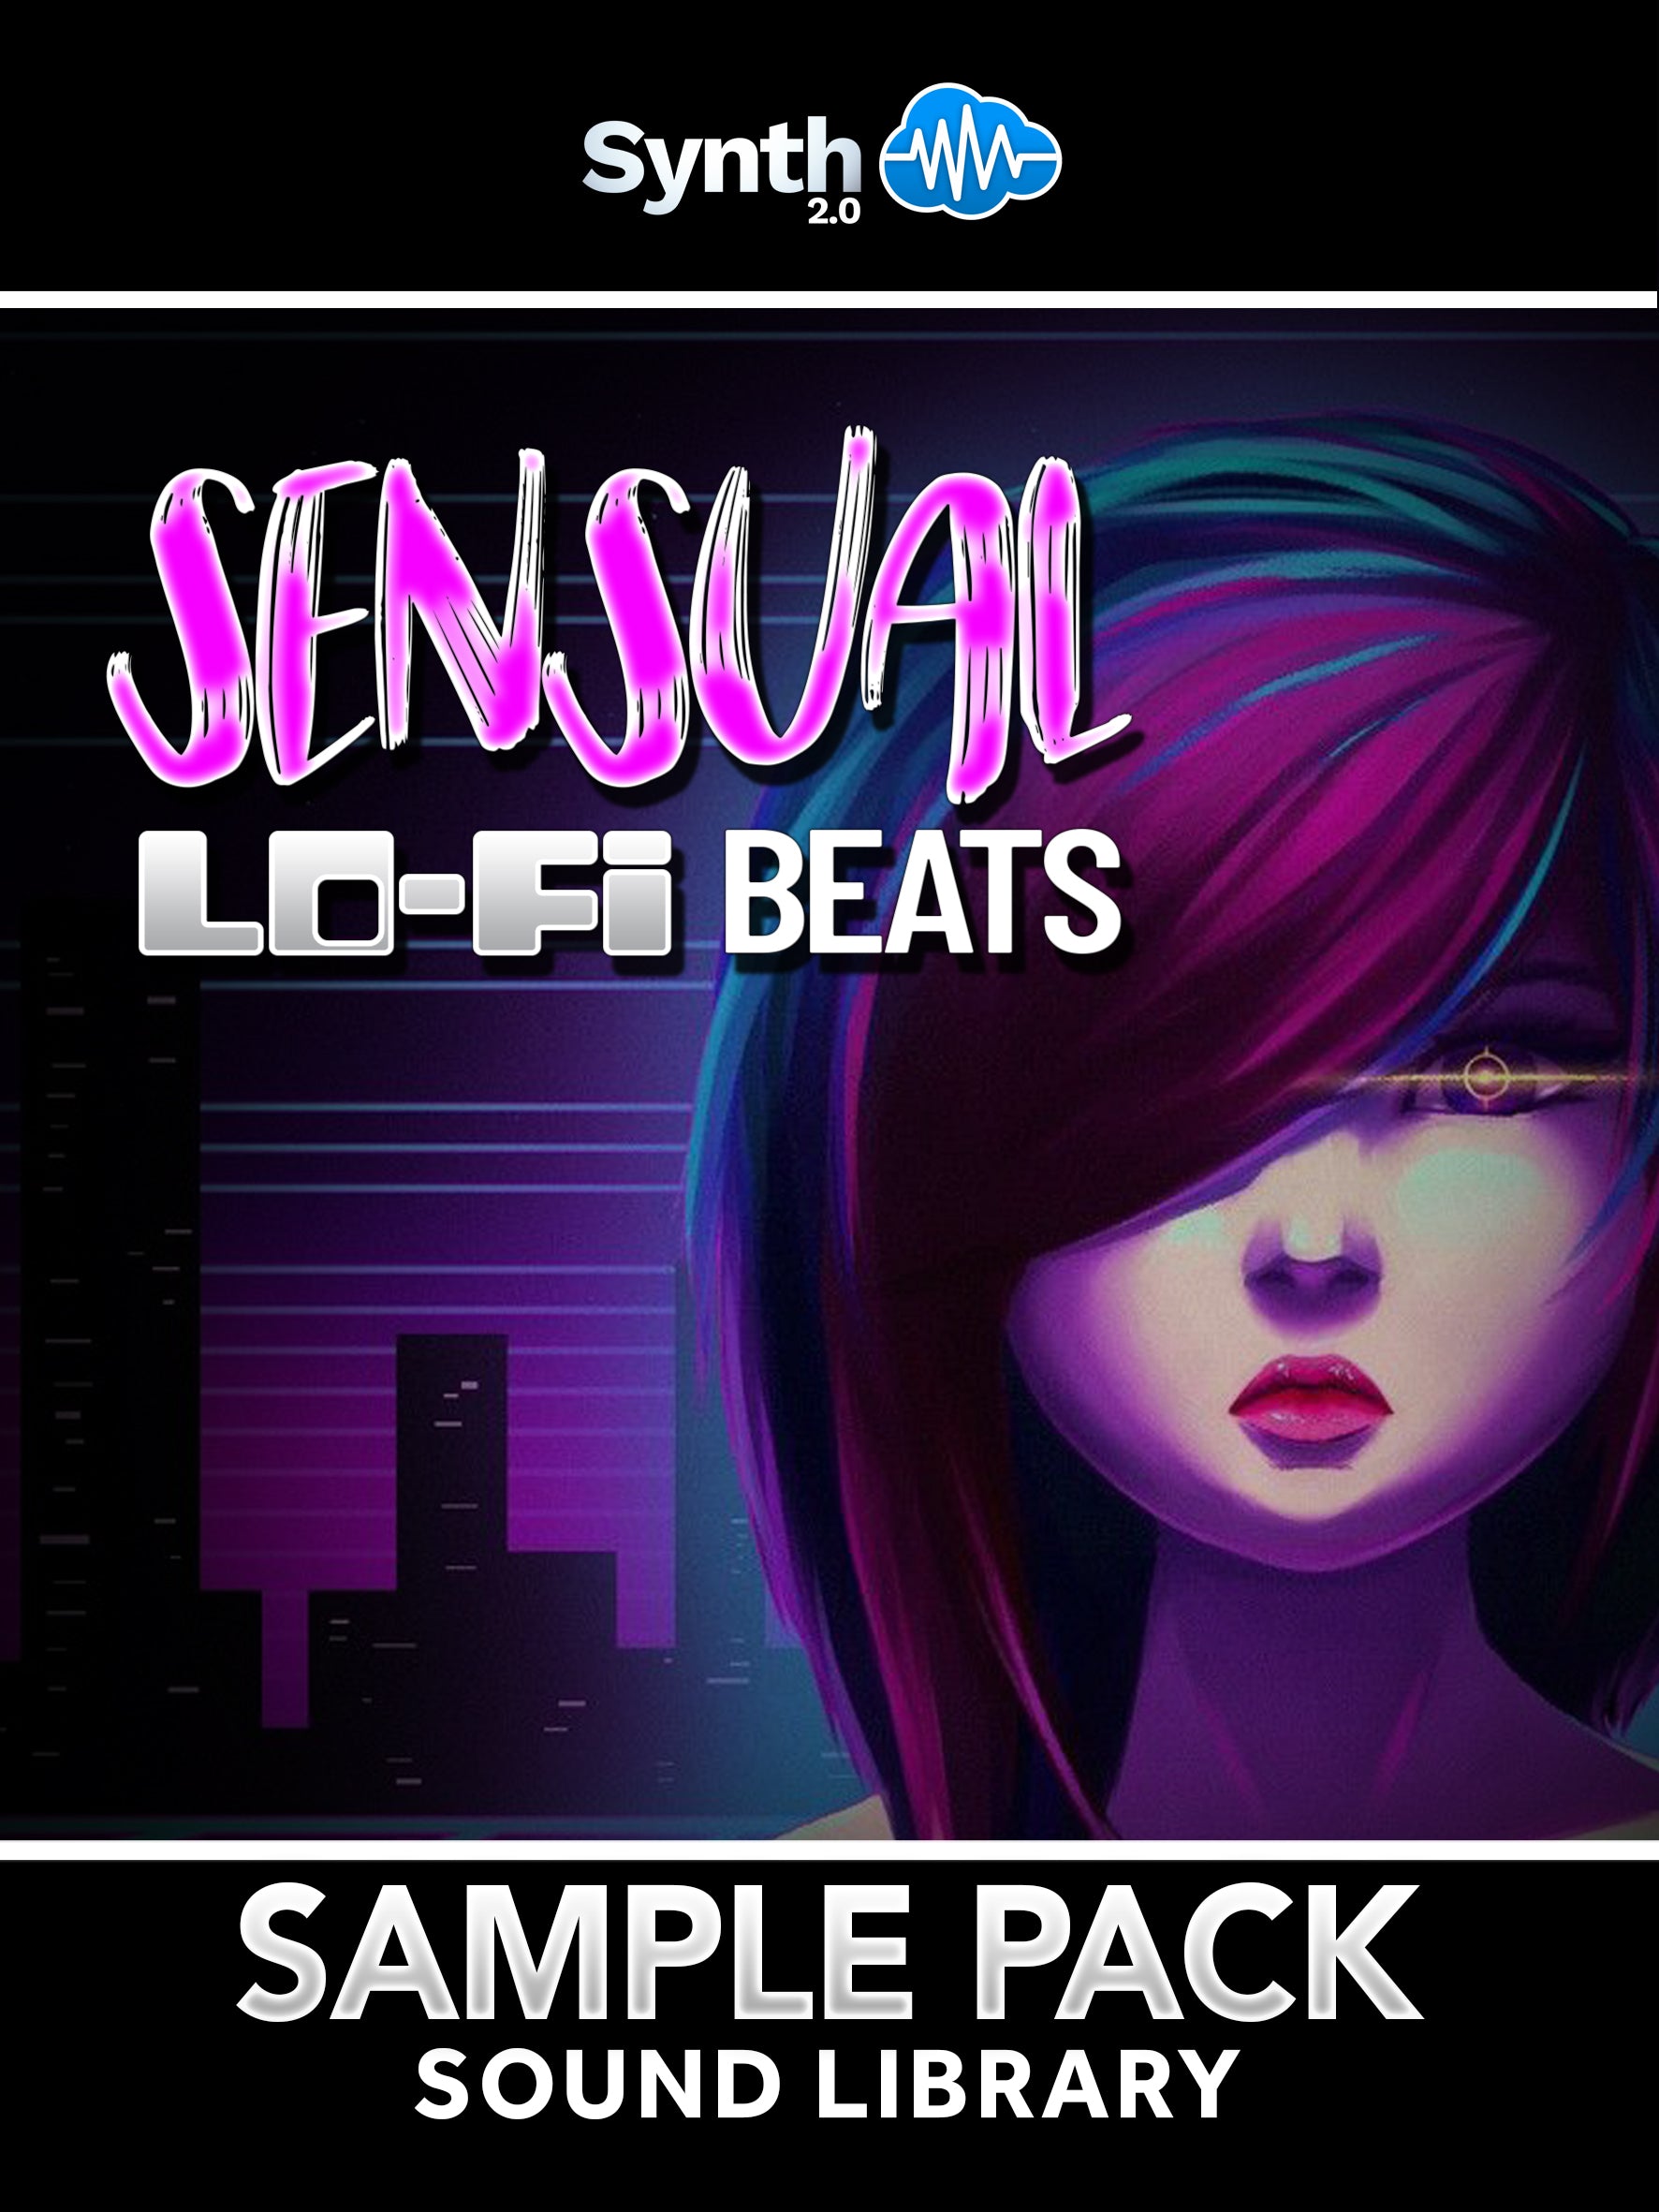 RLS000 - Sensual Lo-Fi Beats - Sample Pack ( over 300 samples )